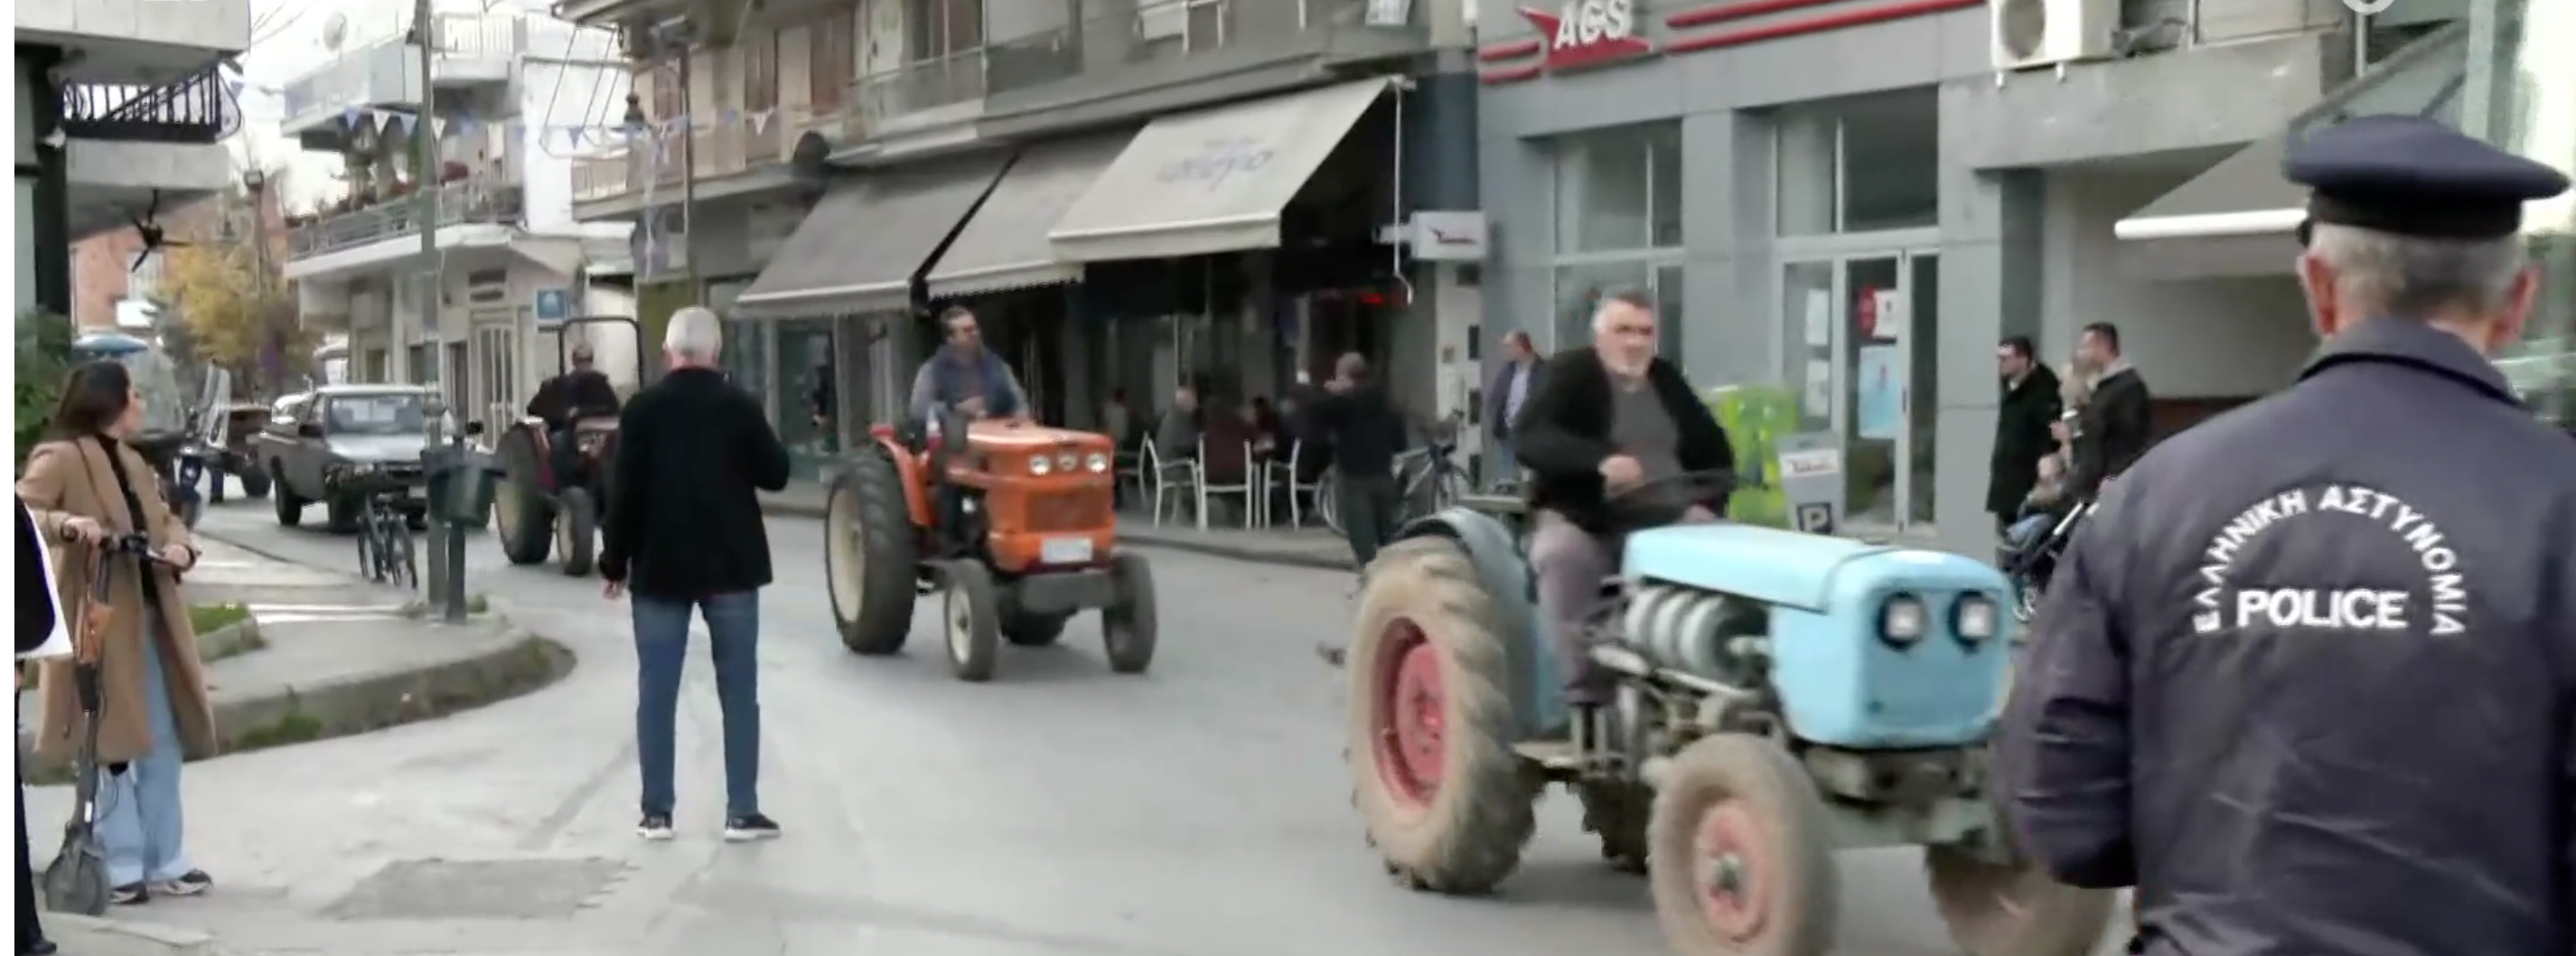 Στους δρόμους οι αγρότες του Τυρνάβου- Χάθηκε η αμπελοκαλλιέργεια εξαιτίας του περονόσπορου